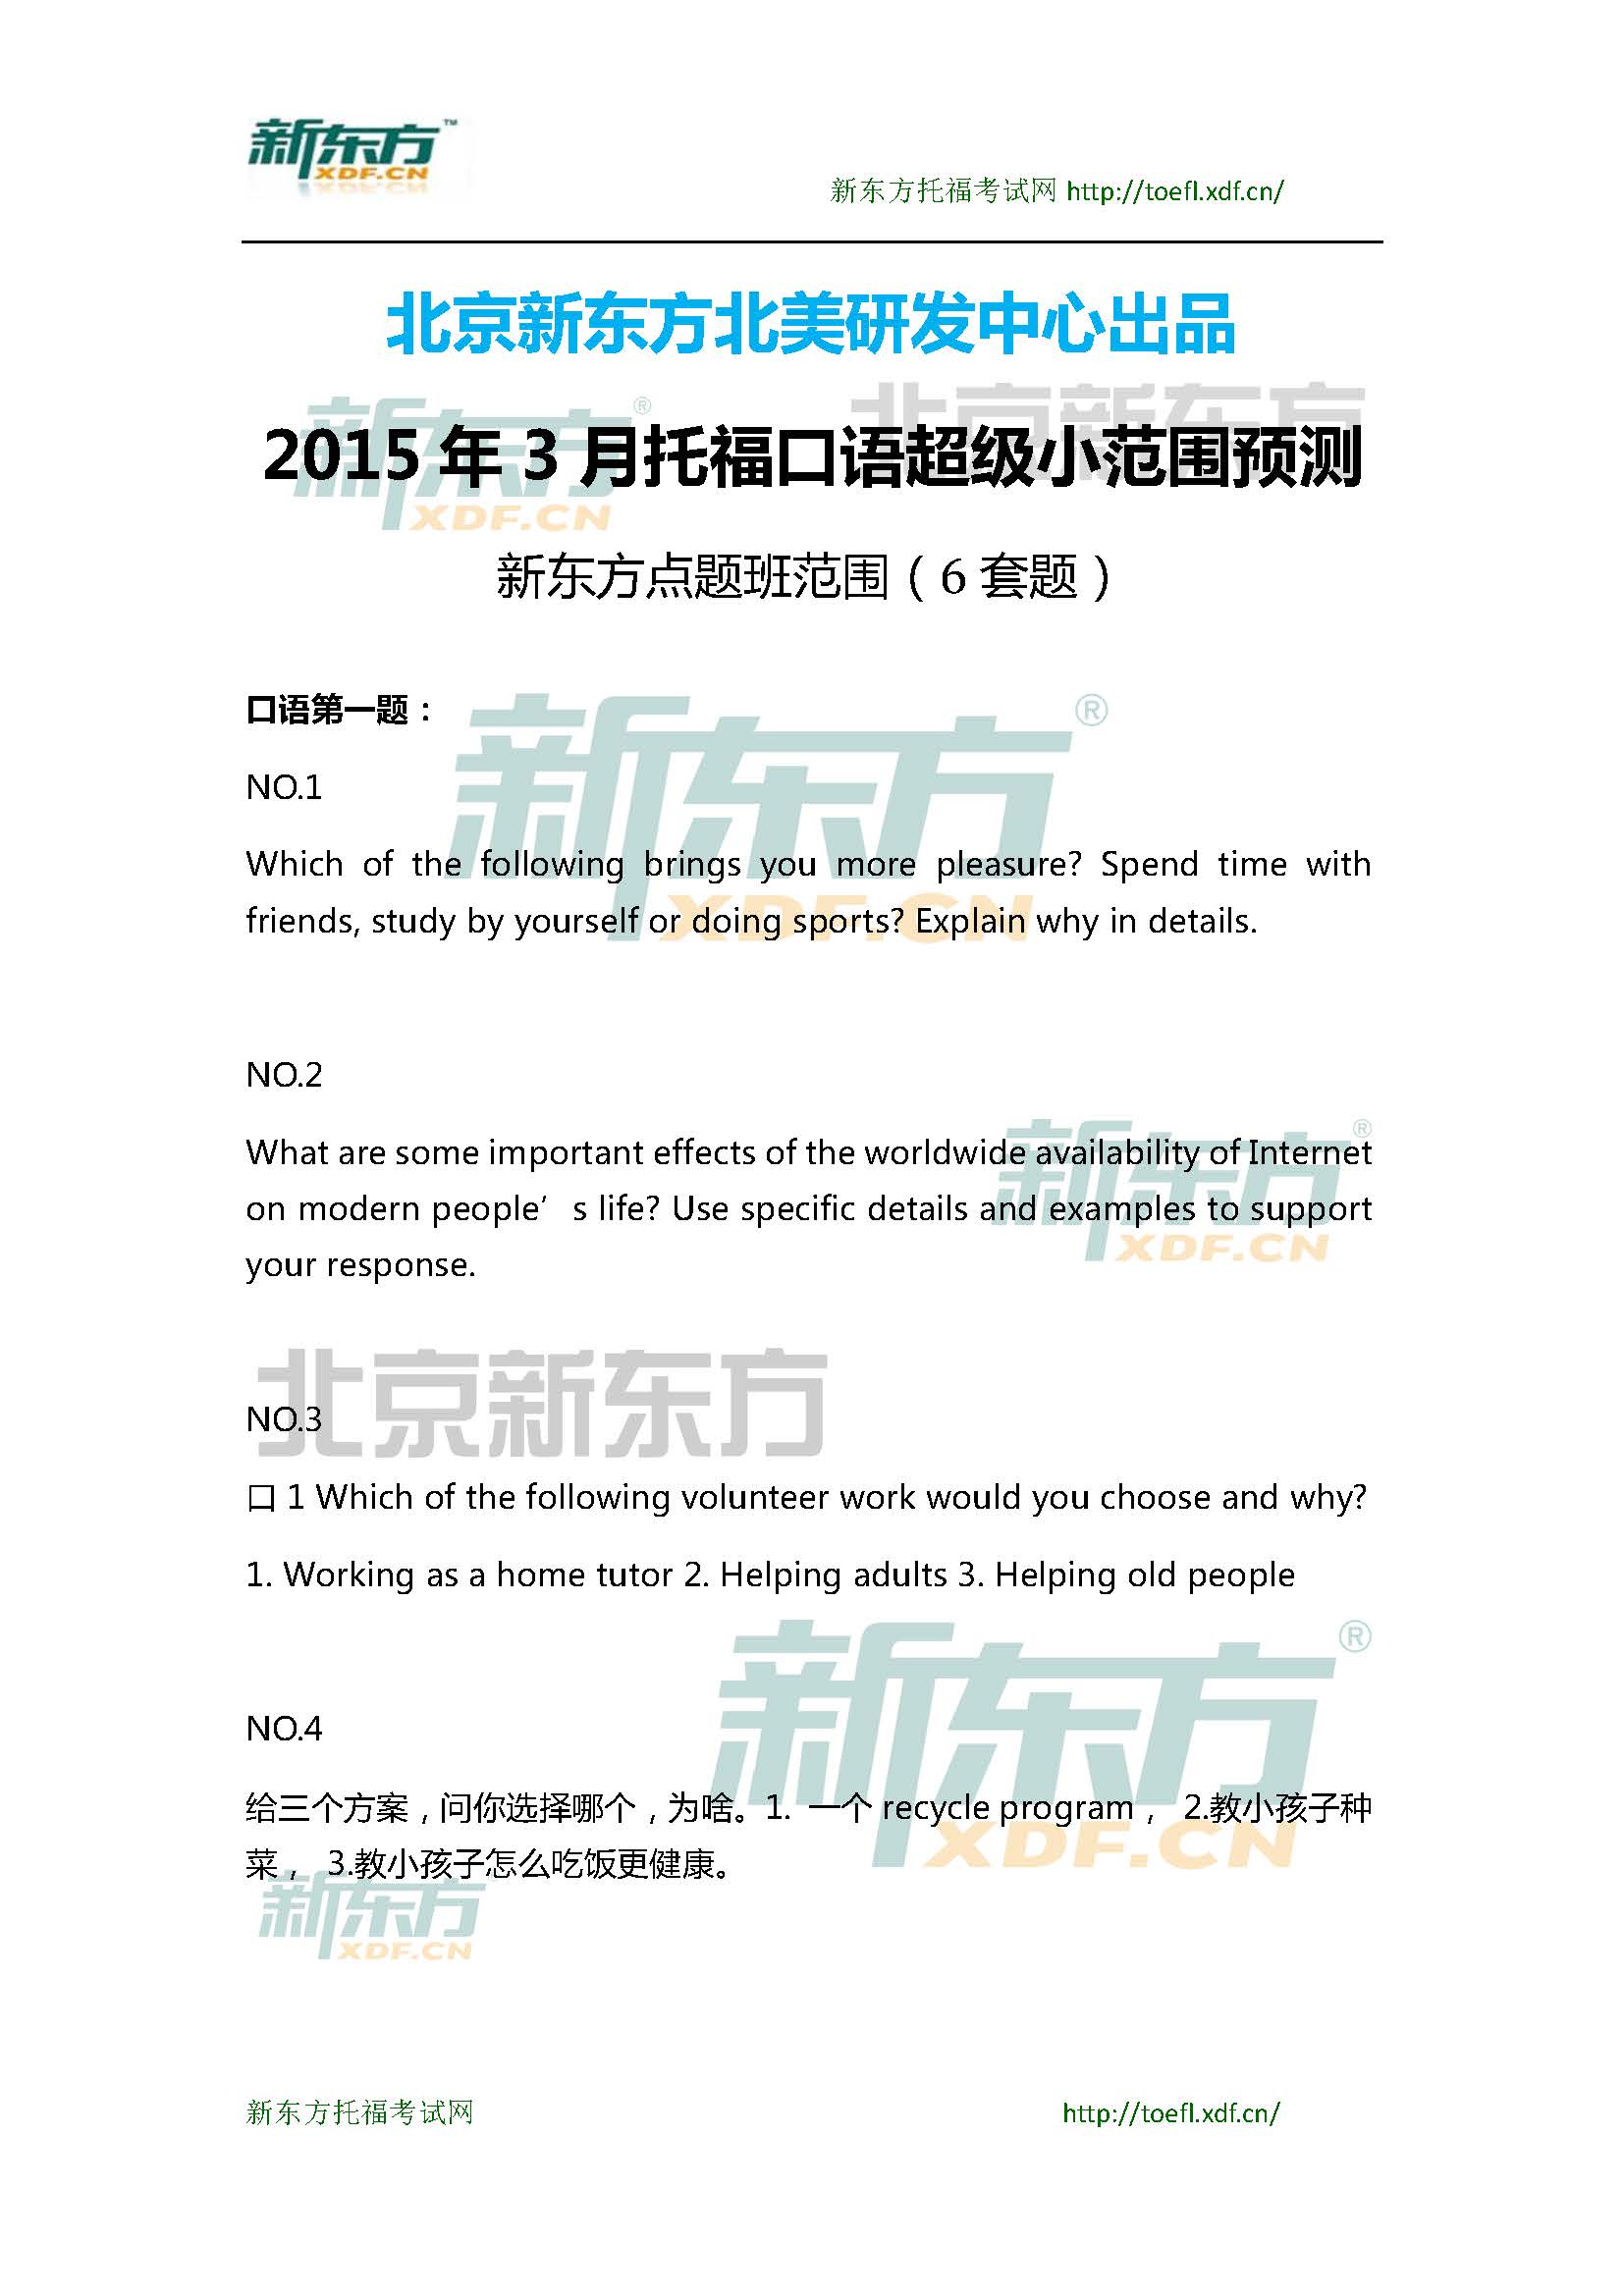 2015年4月12日托福口语超级小范围预测(6套题)